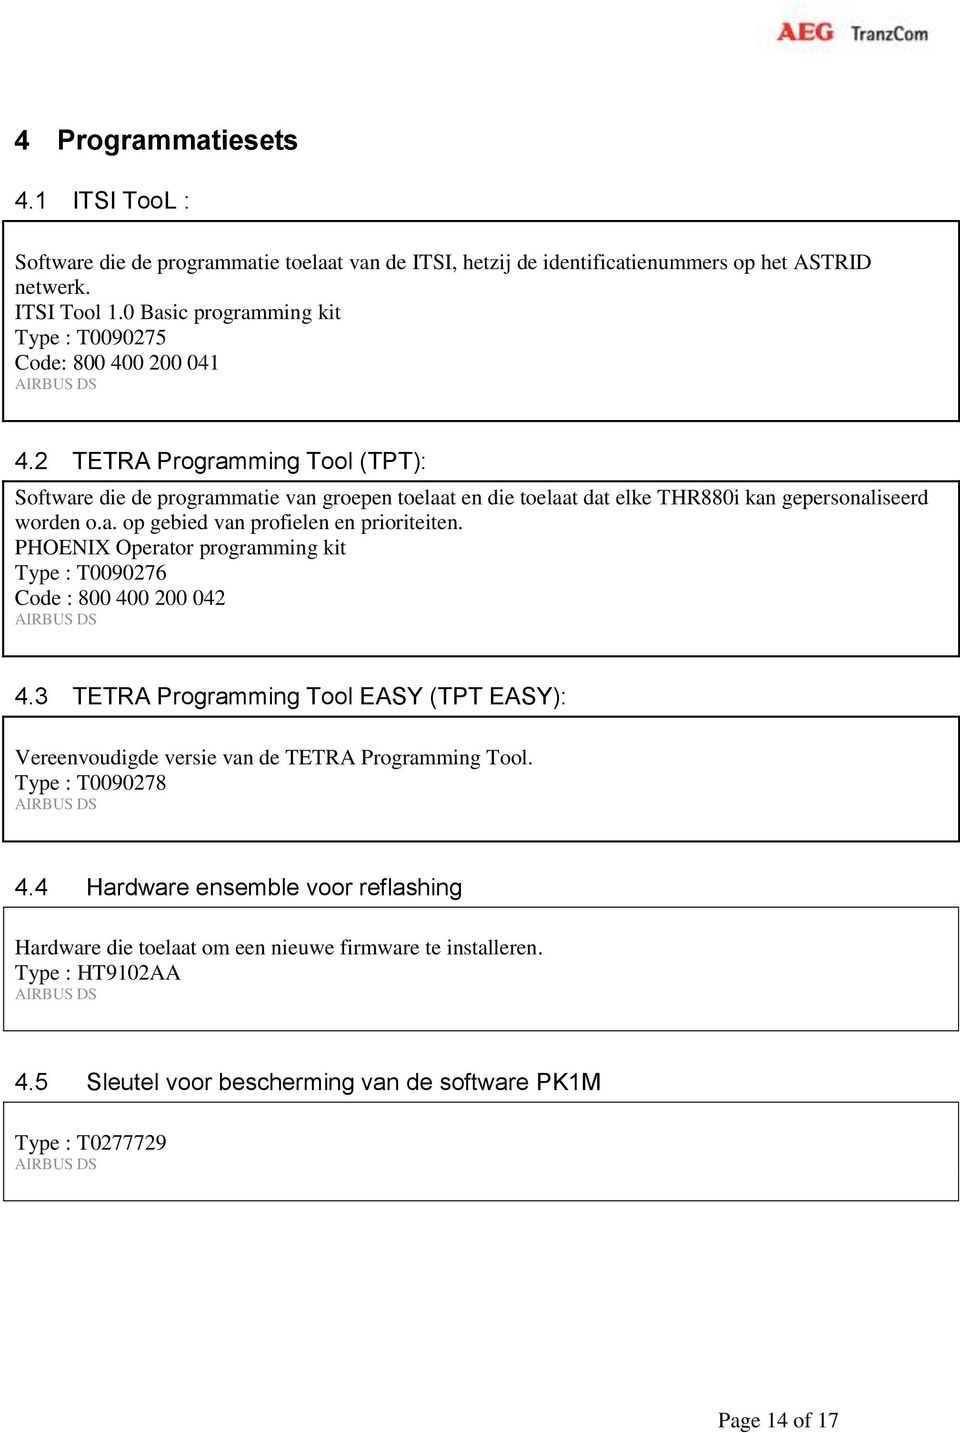 2 TETRA Programming Tool (TPT): Software die de programmatie van groepen toelaat en die toelaat dat elke THR880i kan gepersonaliseerd worden o.a. op gebied van profielen en prioriteiten.